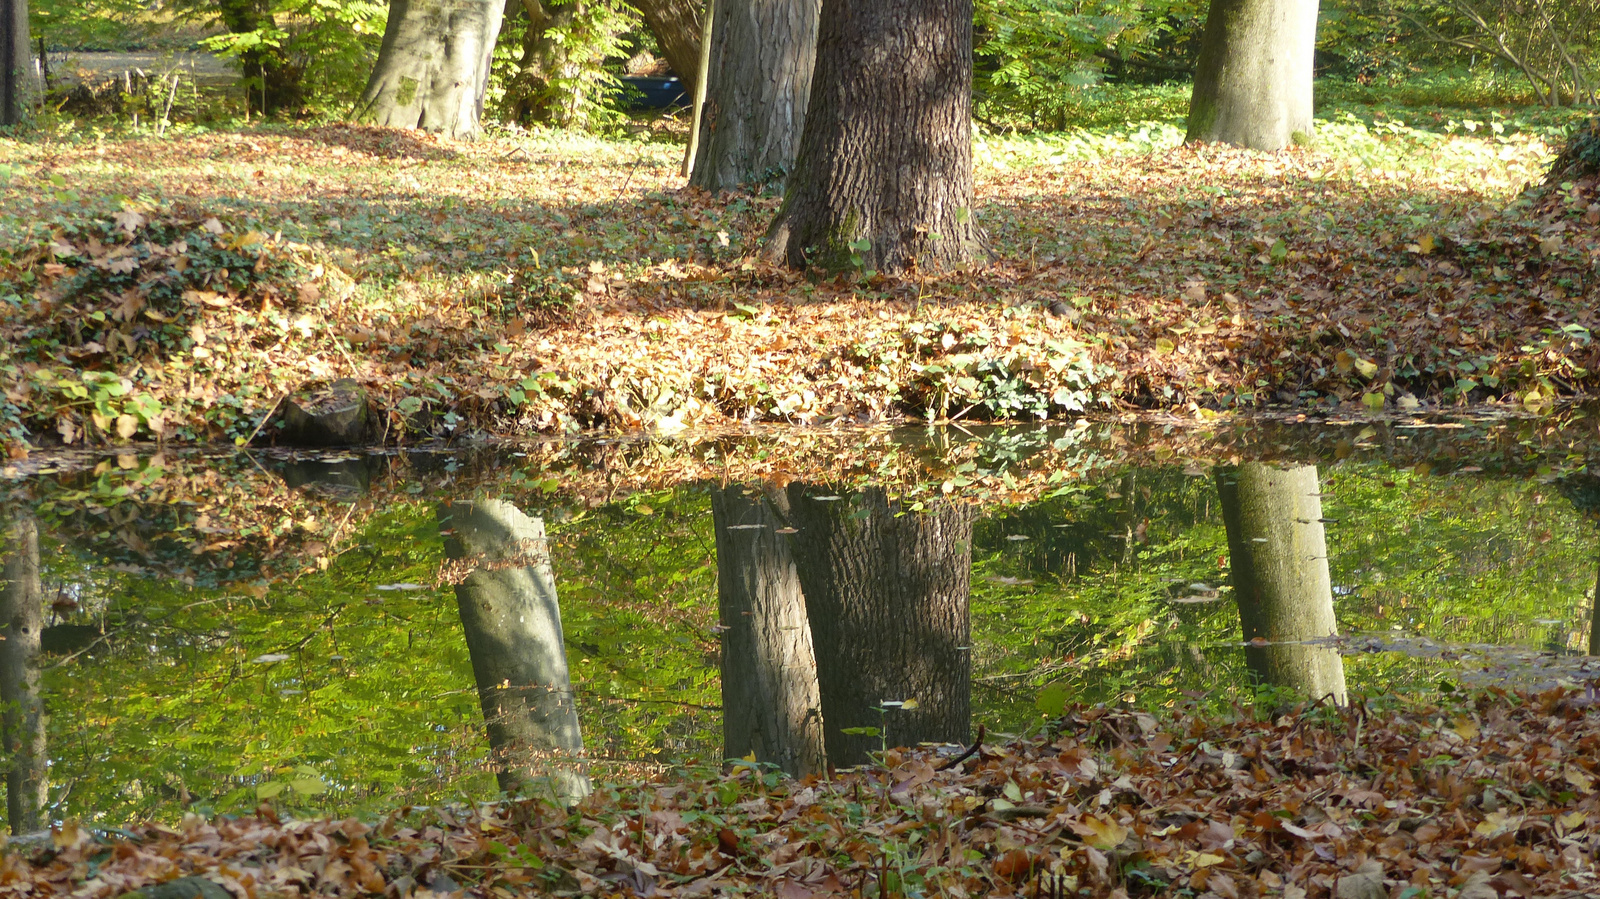 Vácrátót, az Arborétum ősszel, SzG3